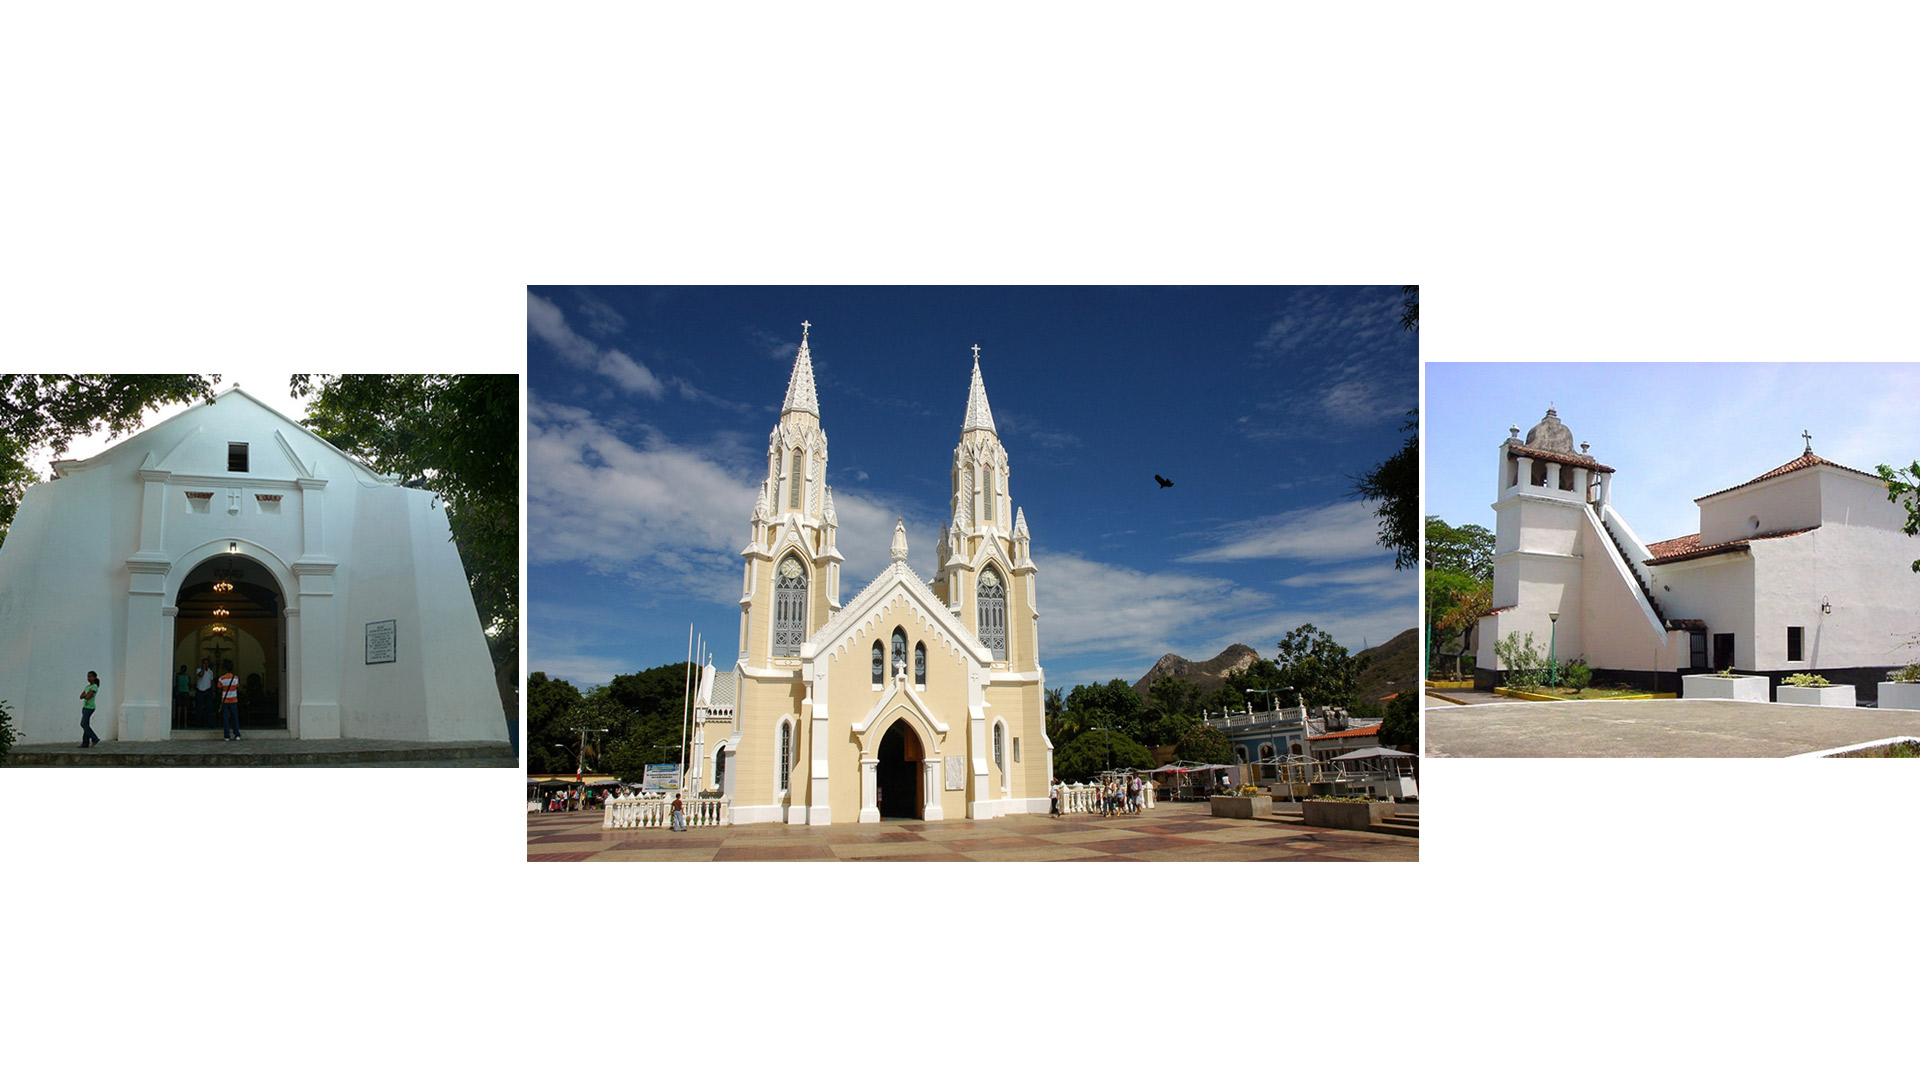 La Ruta de Servicio Especial de Bus Margarita recorrerá las iglesias más emblemáticas de la localidad, entre ellas la famosa iglesia de Santa Ana del Norte